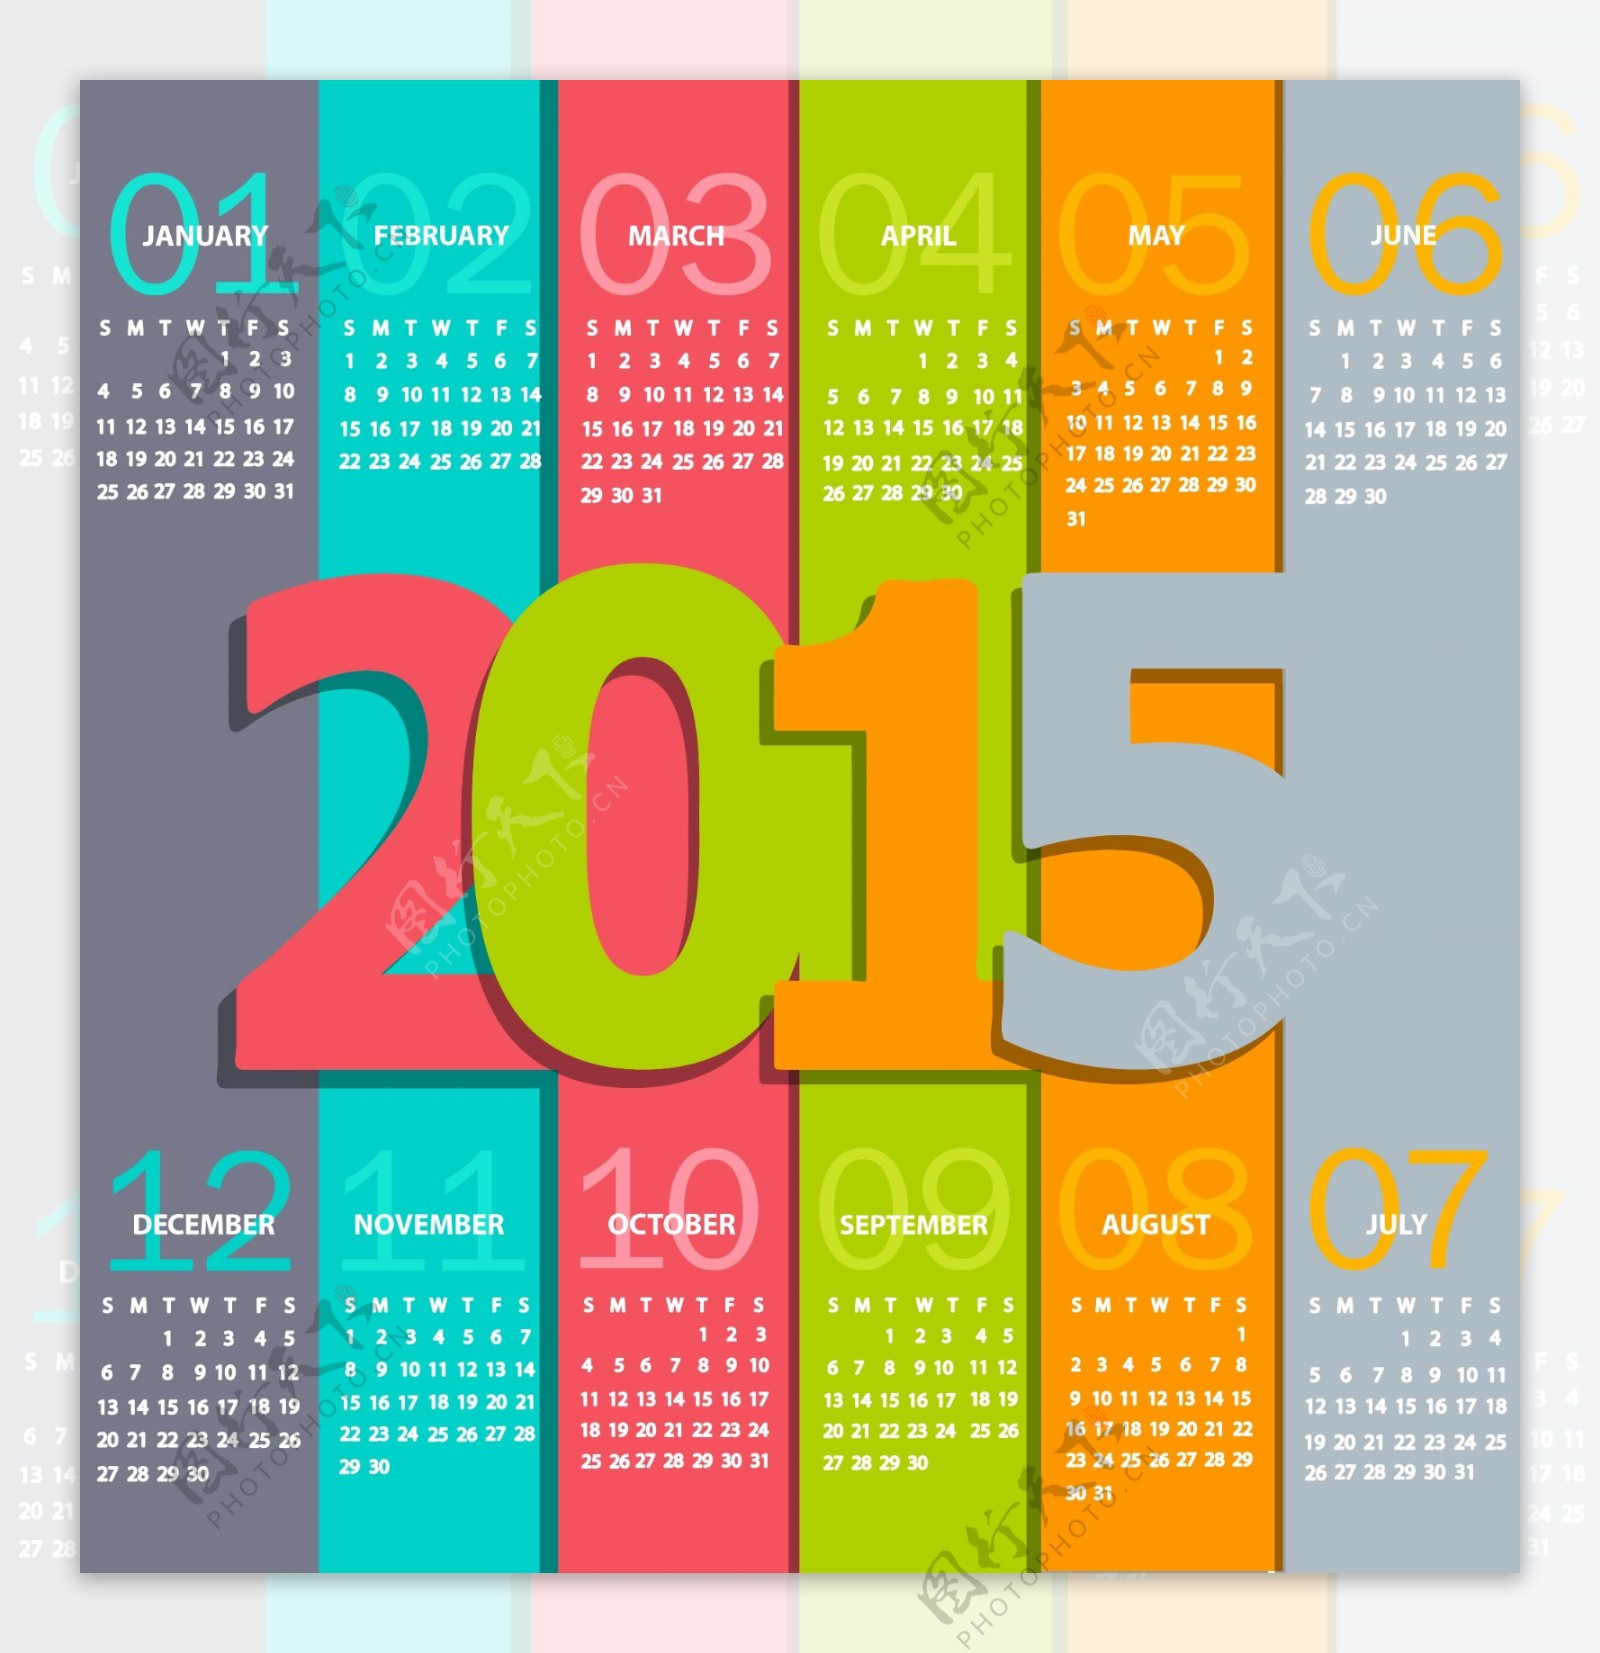 2015羊历日历